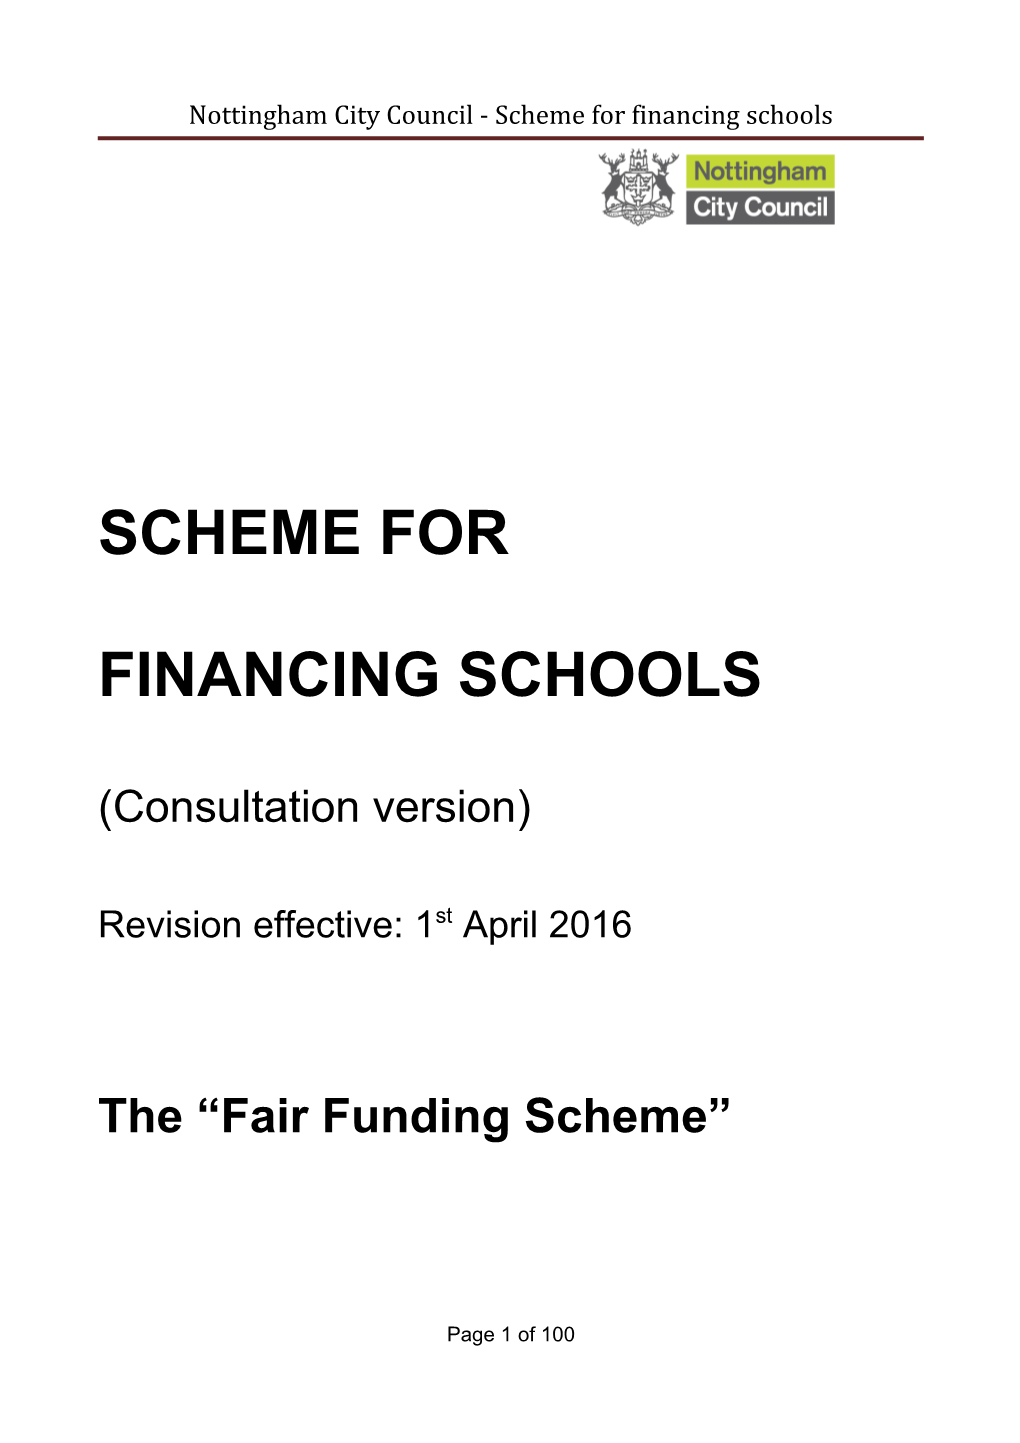 Nottingham City Council - Scheme for Financing Schools